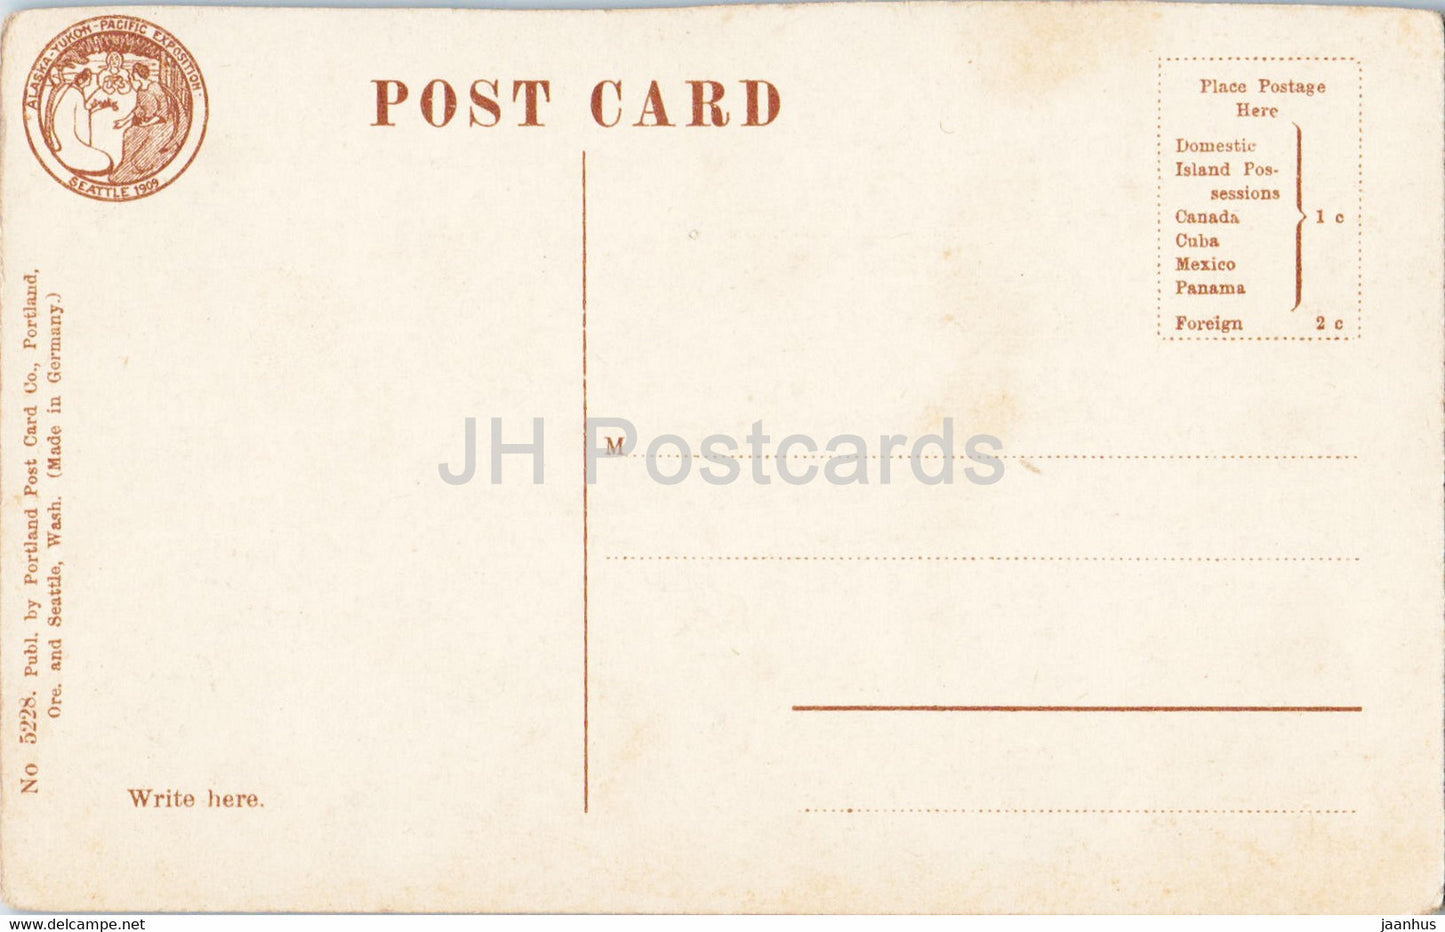 Lake Union - Seattle - Washington - 5228 - old postcard - USA - unused